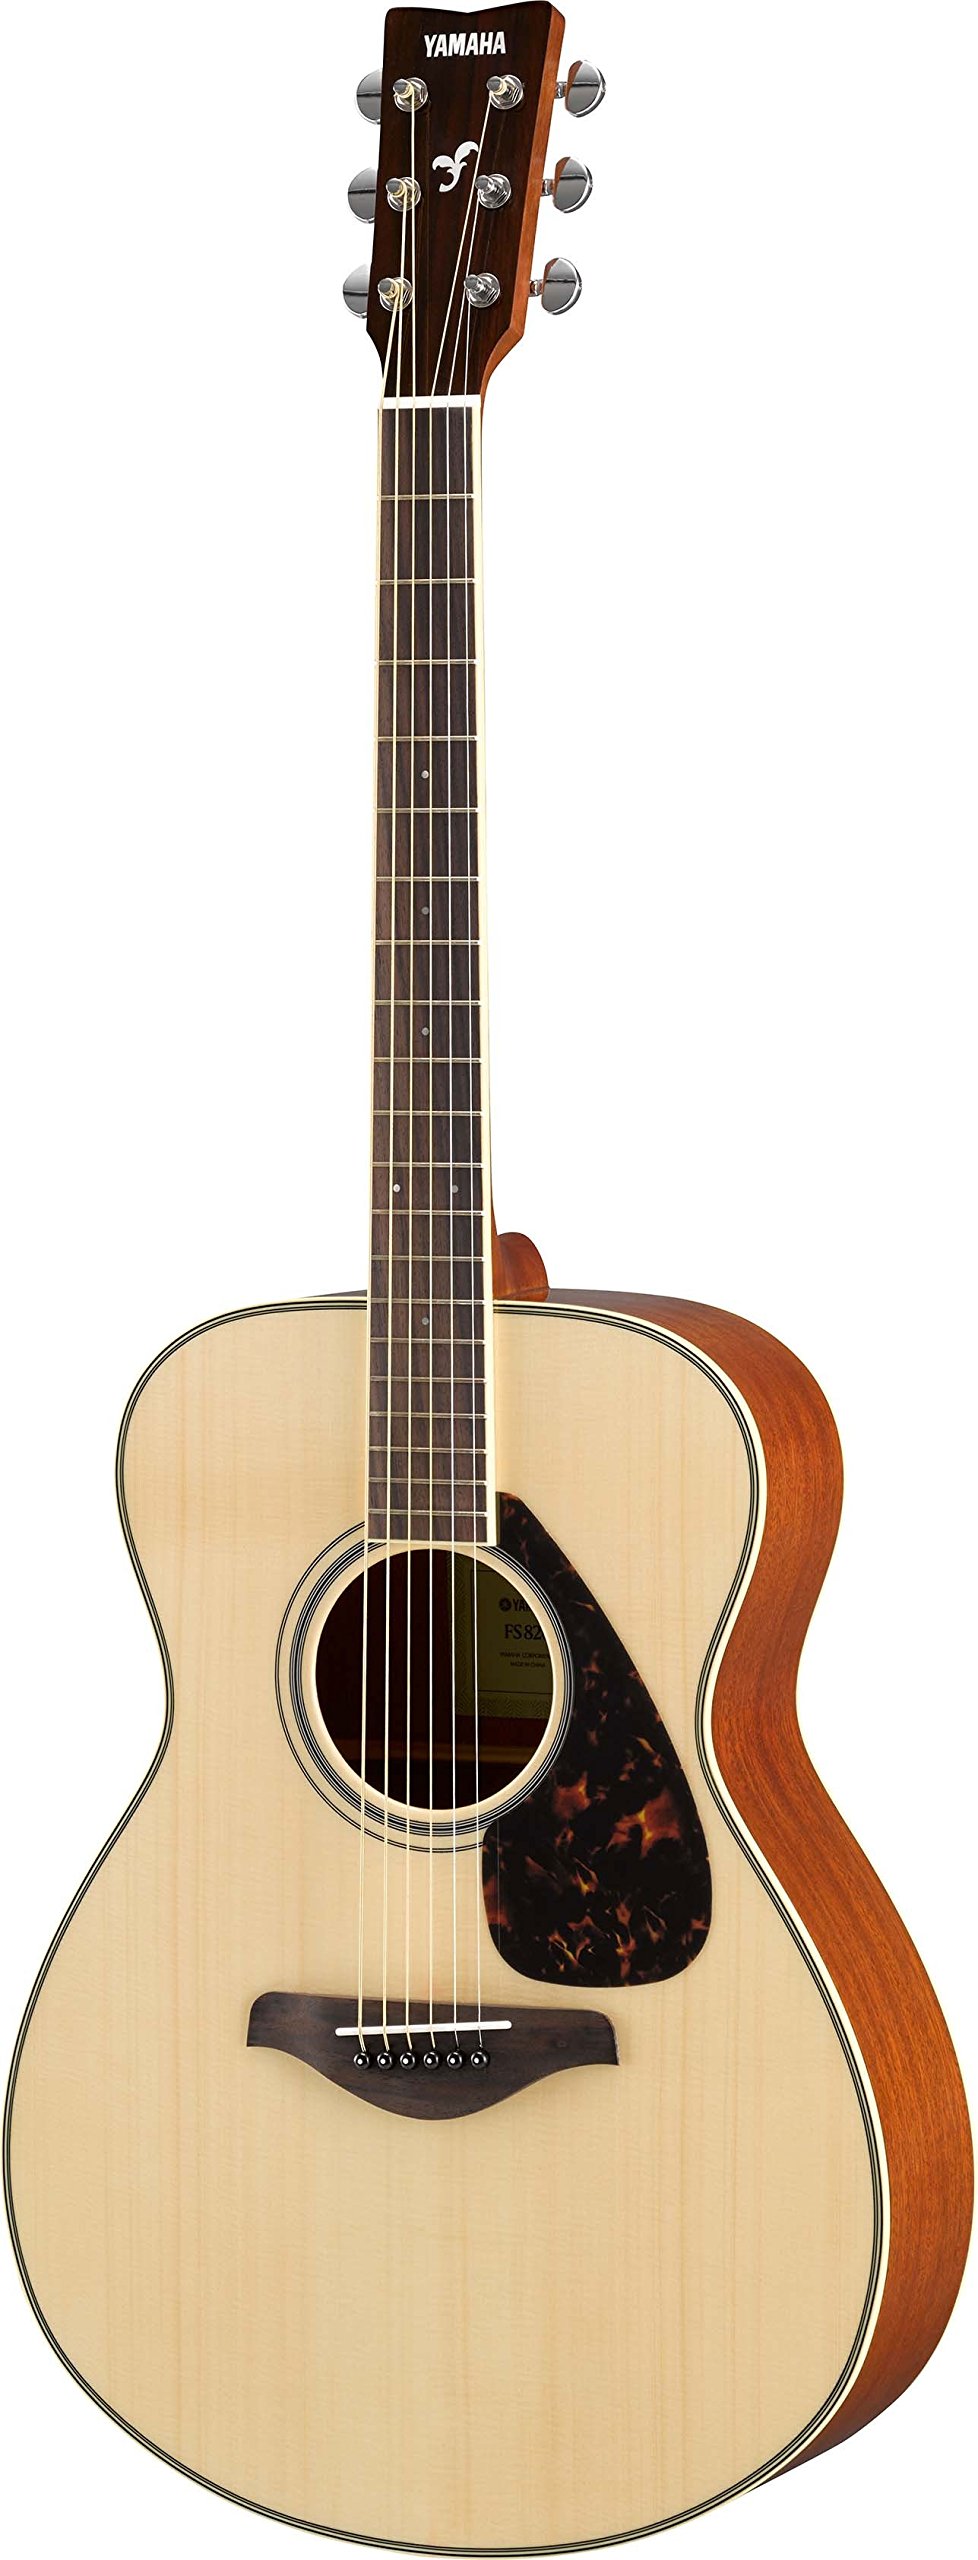 YAMAHA FG820 ソリッドトップ アコースティックギター